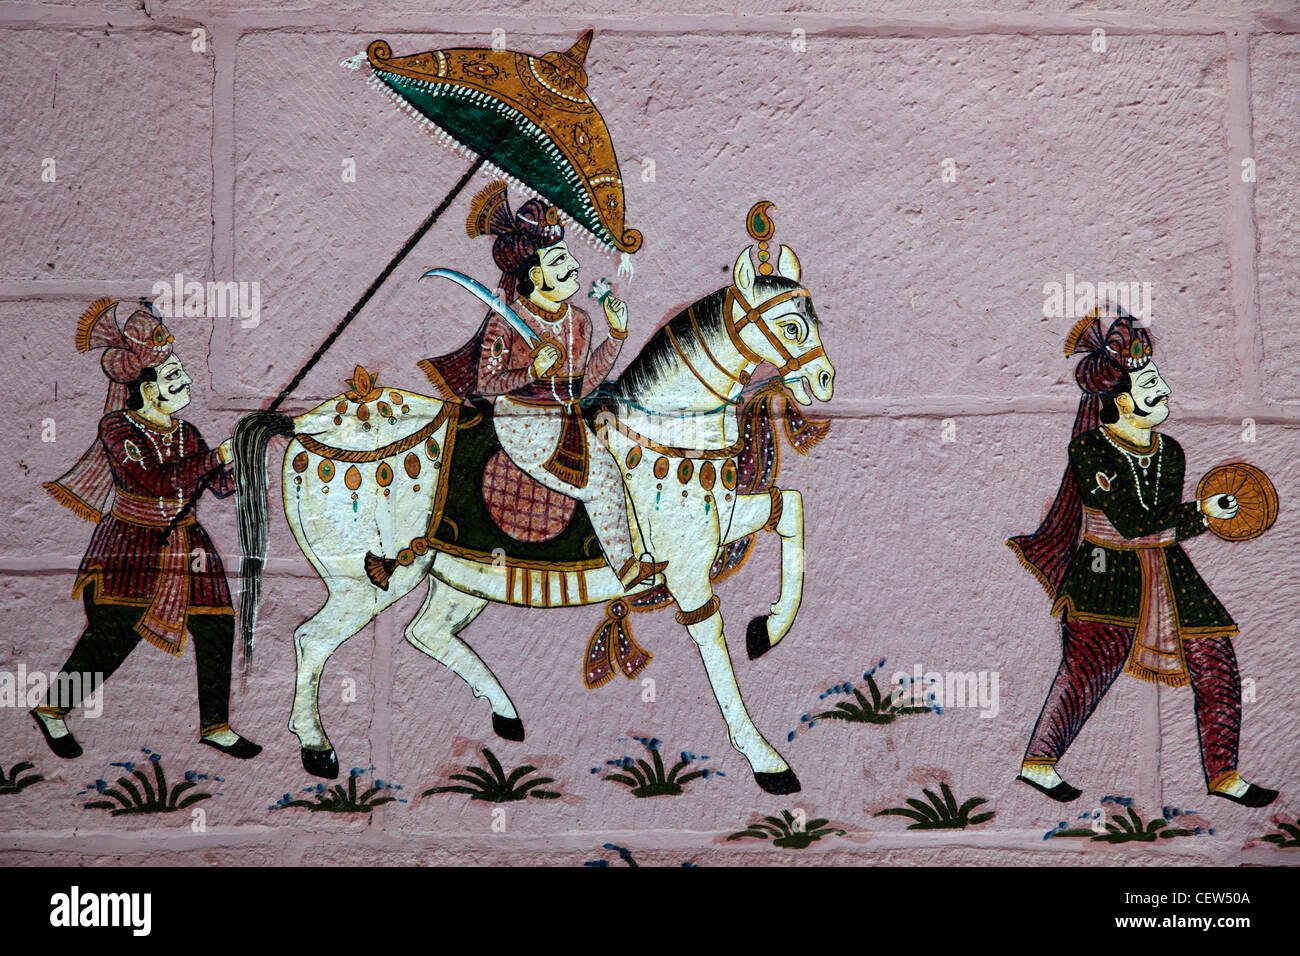 Indien, Rajasthan, Jodhpur, Wandgemälde, Wandmalerei, Stockfoto